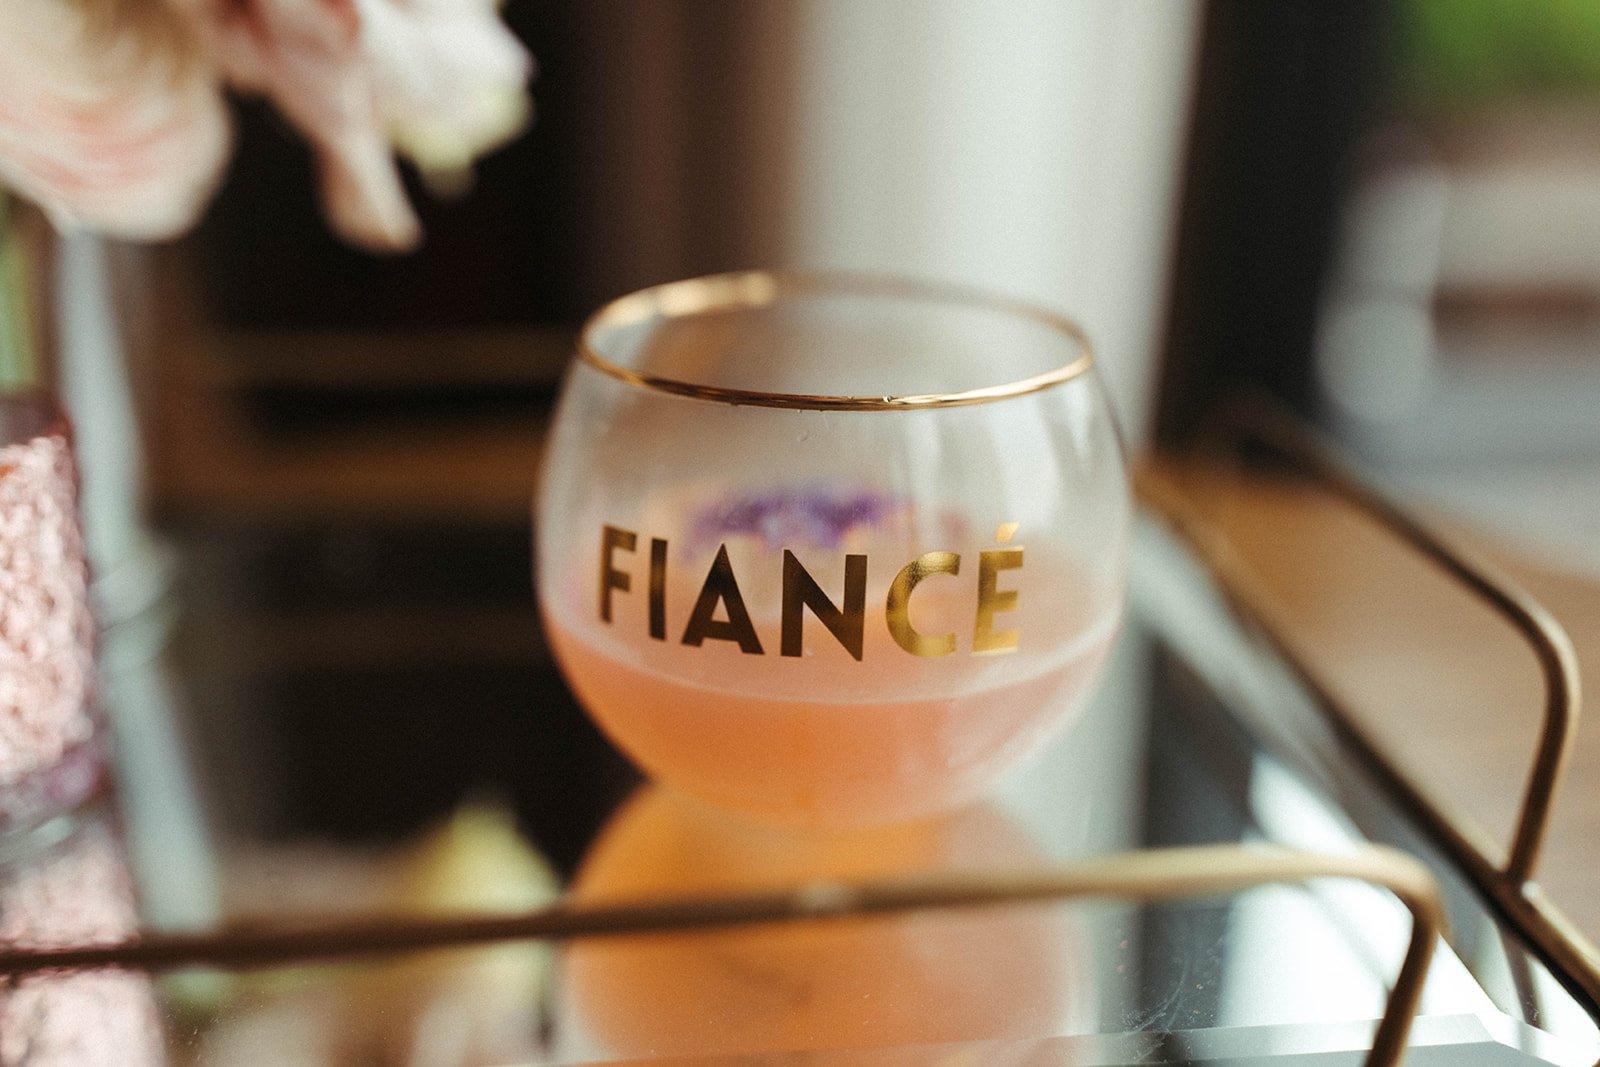 Fiancé cup